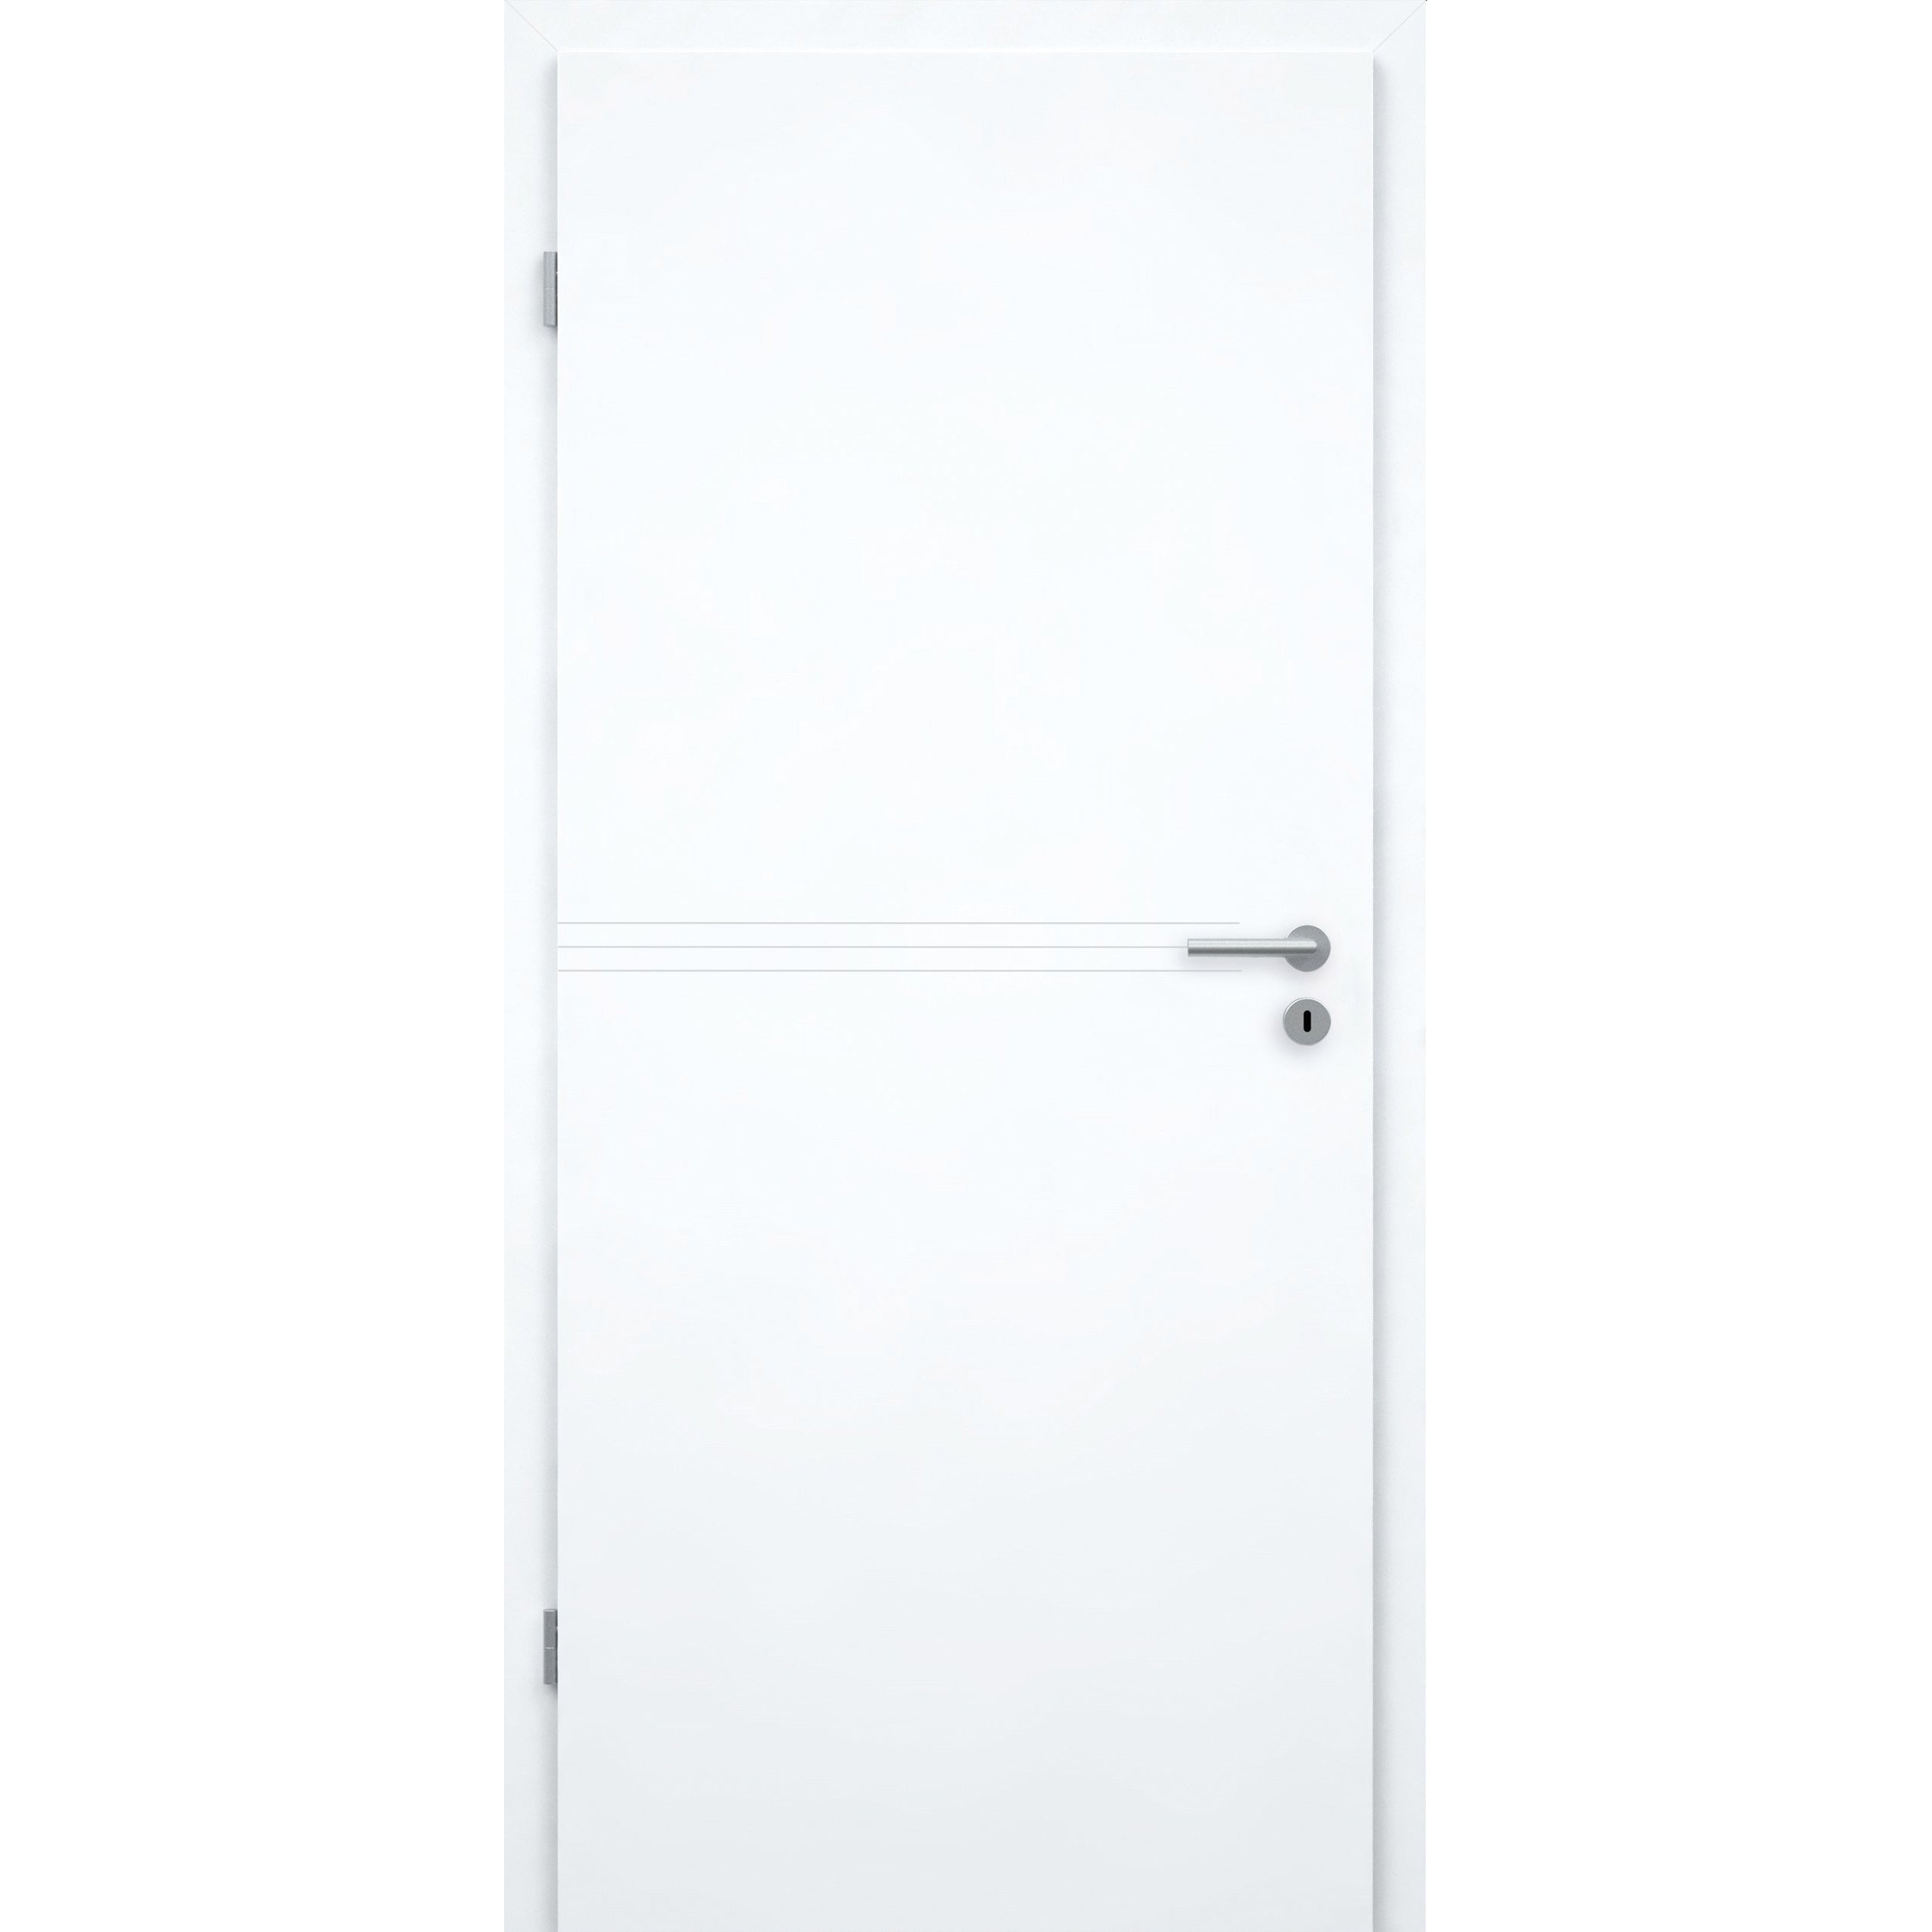 Wohnungseingangstür mit Zarge brillant-weiß 3 Rillen Designkante SK1 / KK3 - Modell Designtür Q33